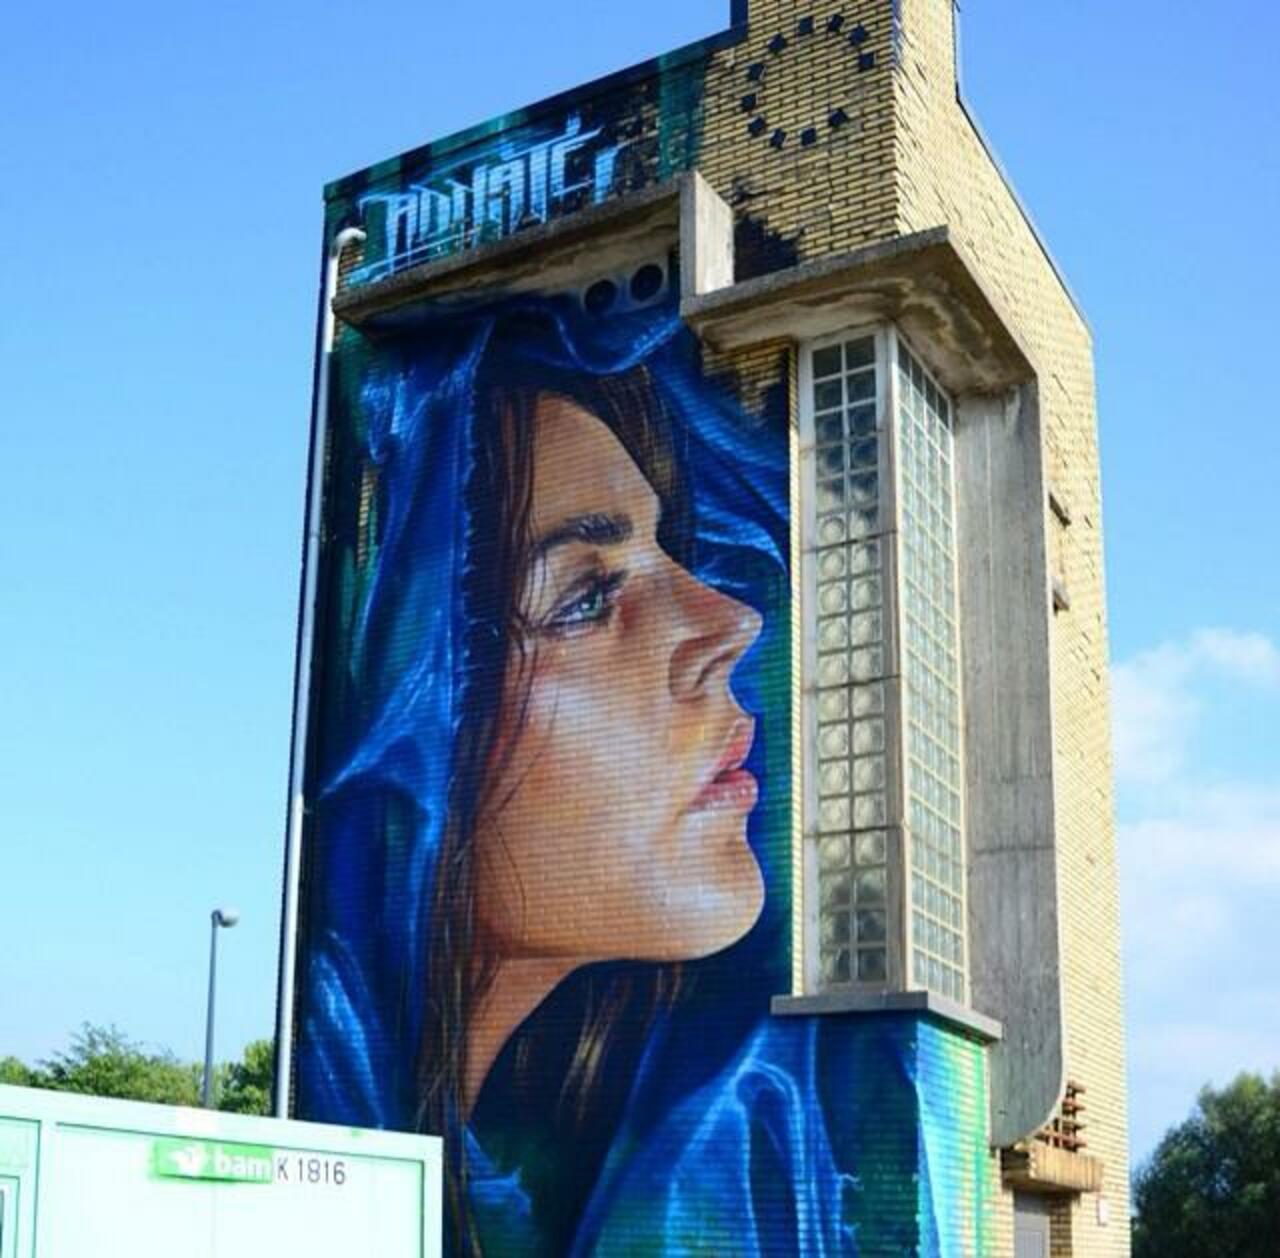 #MattAdnate wonderful massive StreetArt mural in Hasselt Belgium #art #graffiti #mural #streetart http://t.co/mf0EdEX05v / @GoogleStreetArt